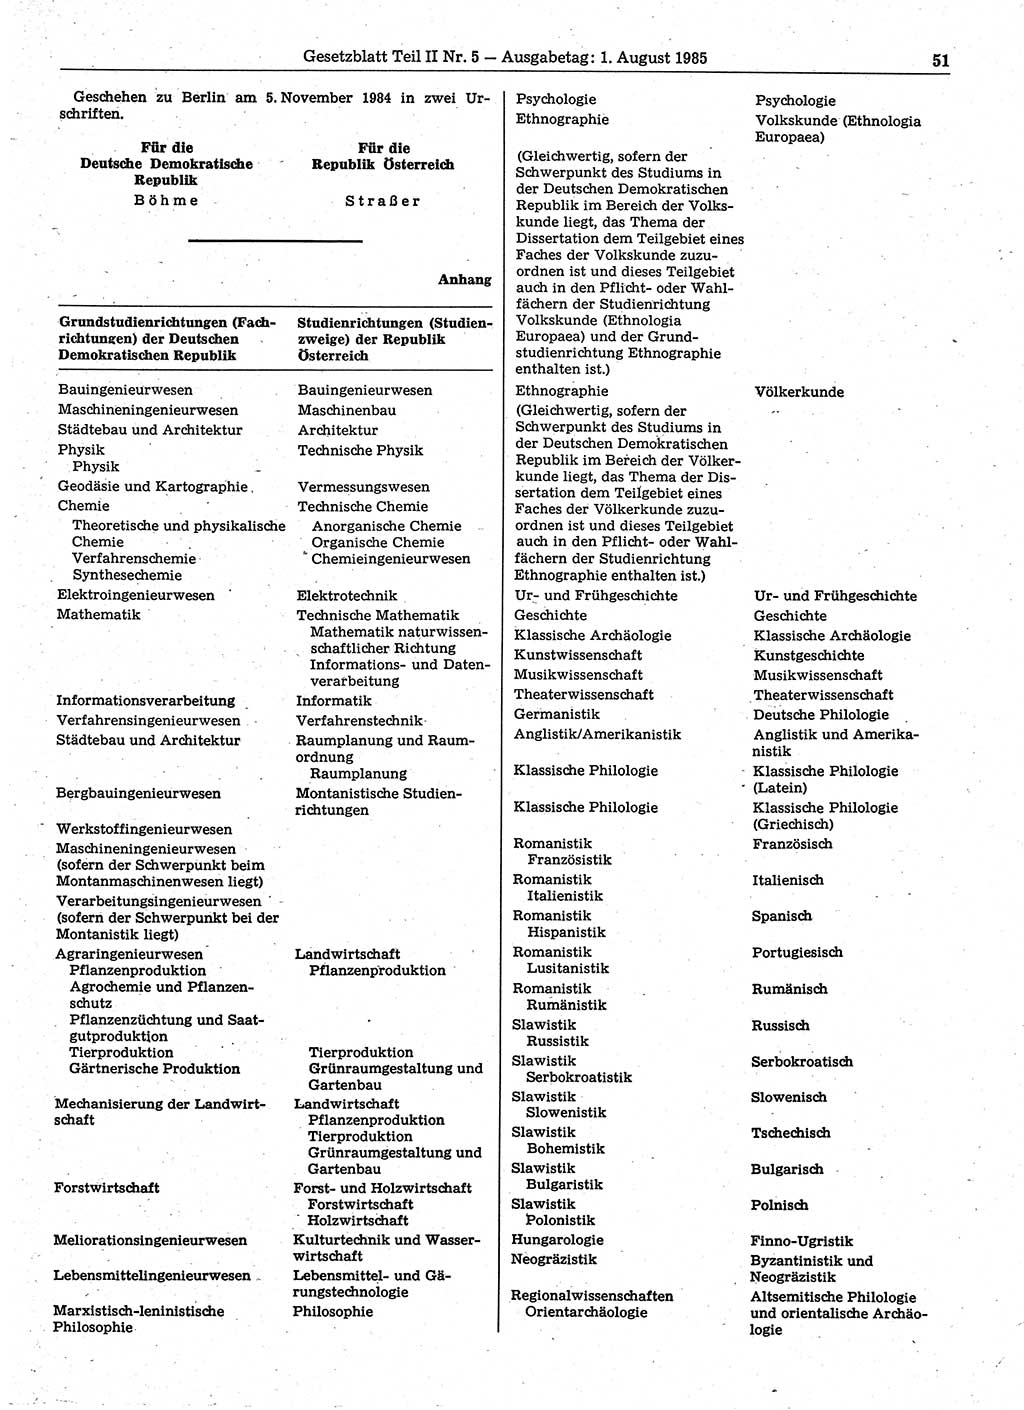 Gesetzblatt (GBl.) der Deutschen Demokratischen Republik (DDR) Teil ⅠⅠ 1985, Seite 51 (GBl. DDR ⅠⅠ 1985, S. 51)